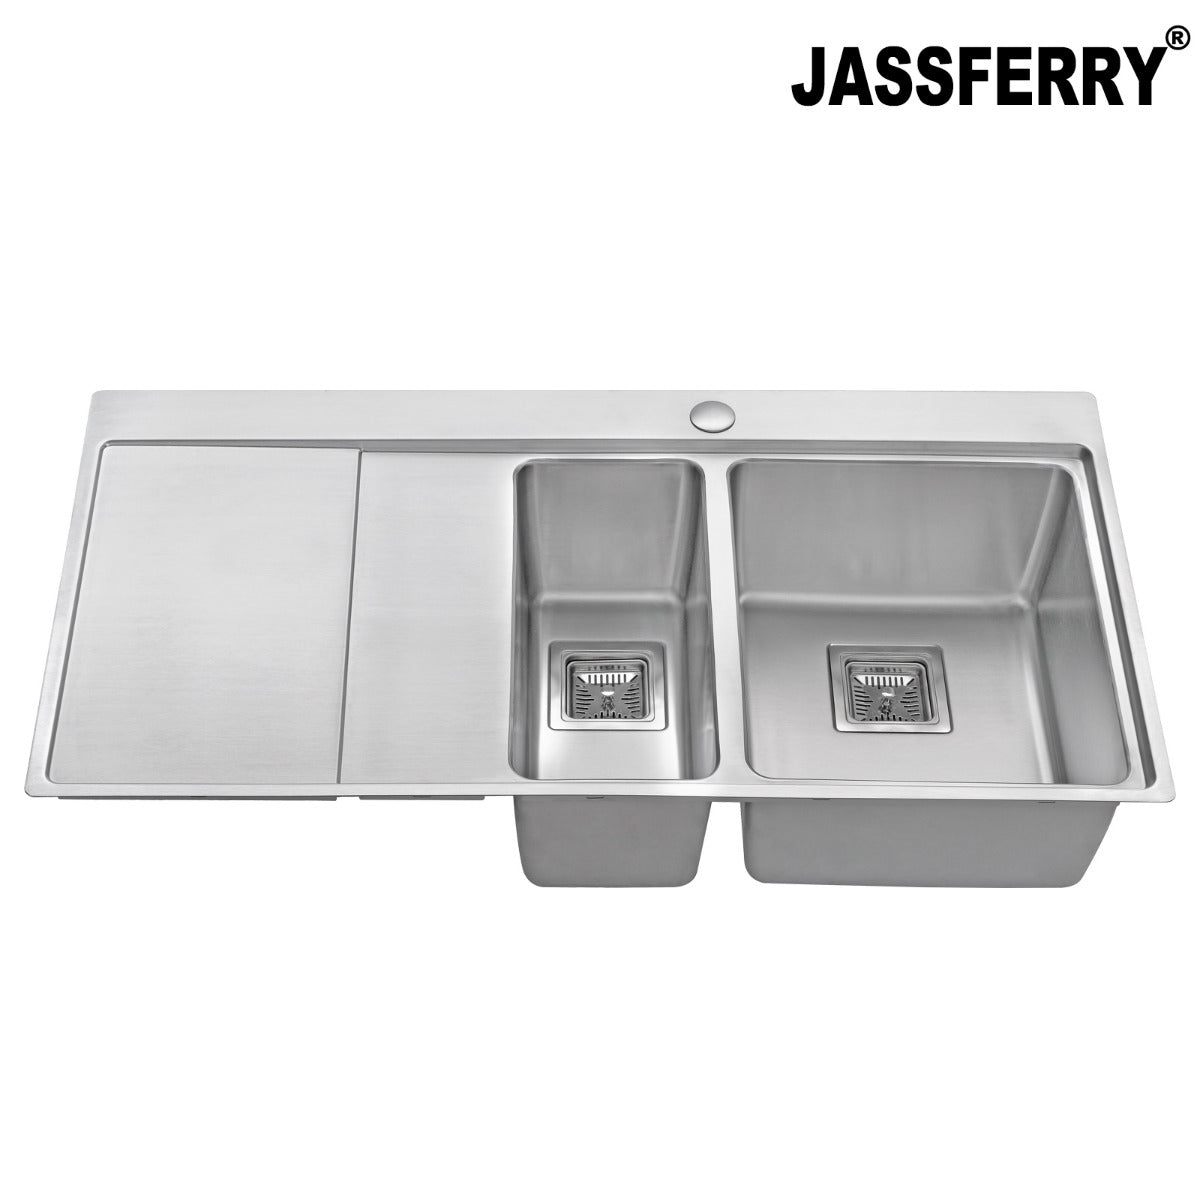 JassferryJASSFERRY Brilliant Stainless Steel Kitchen Sink One&Half Bowl Left hand DrainerKitchen Sink